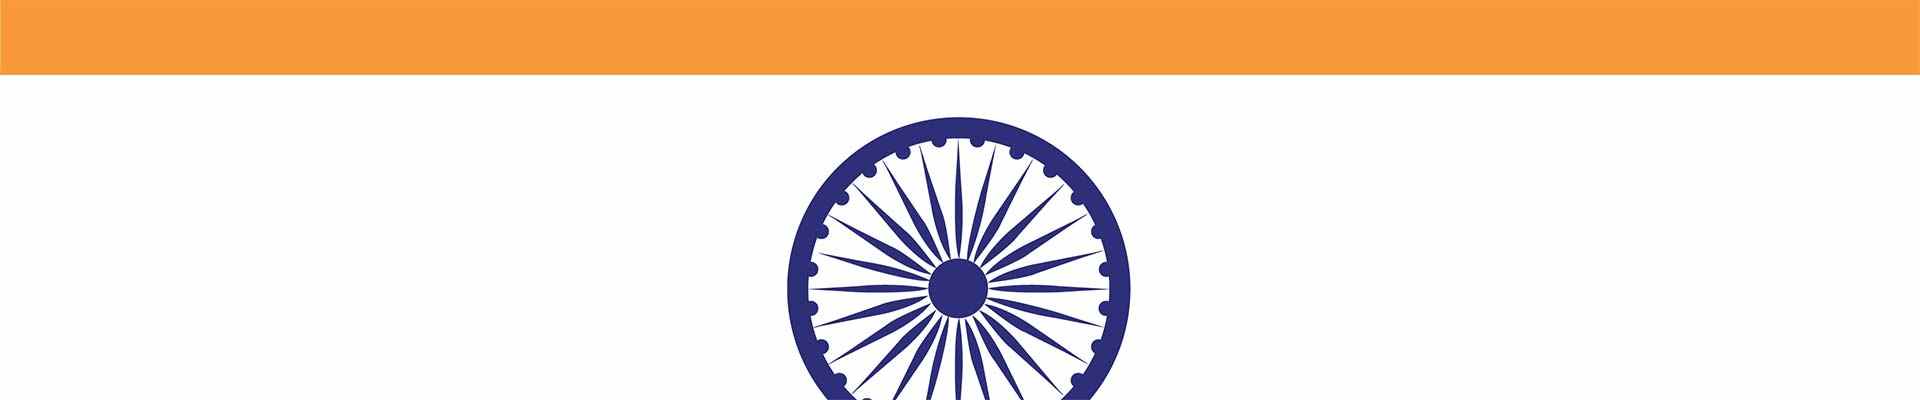 Un segment du drapeau indien